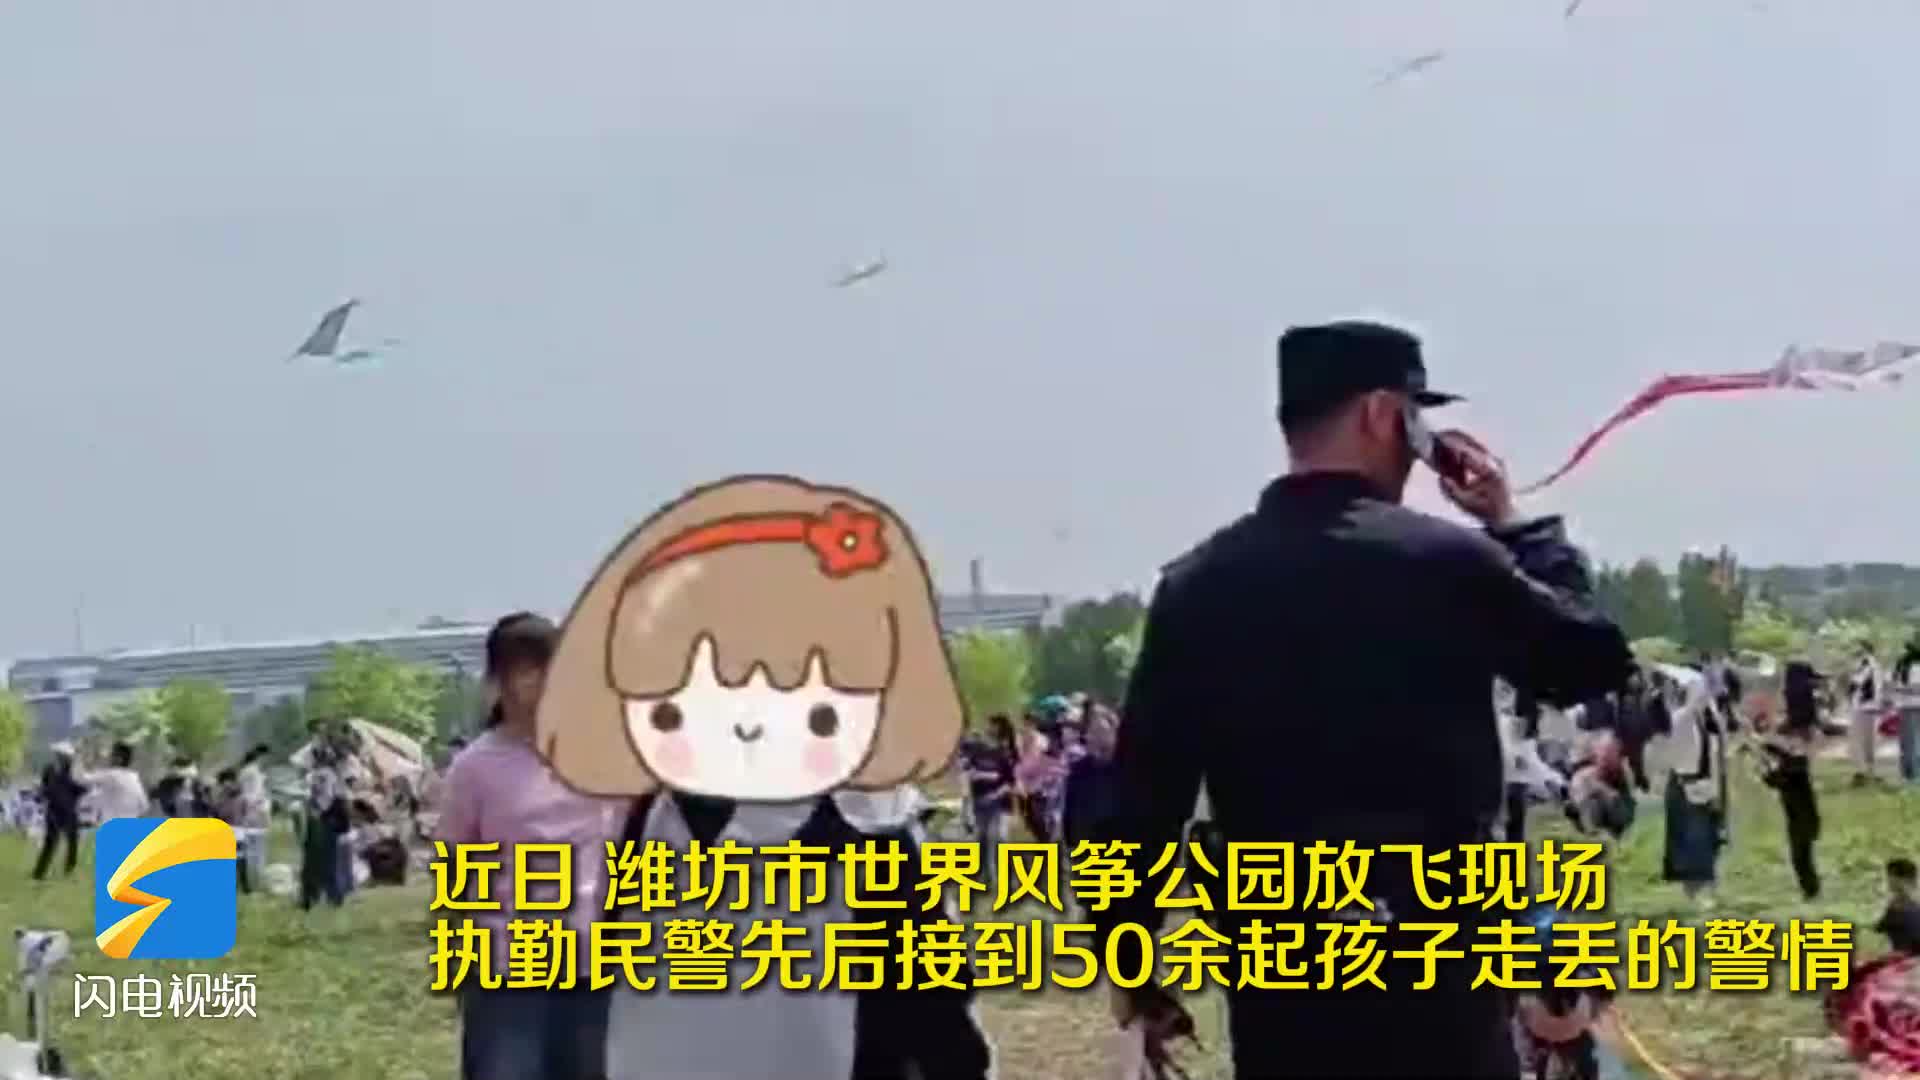 风筝会现场潍坊民警两天帮助找回50多名走失儿童